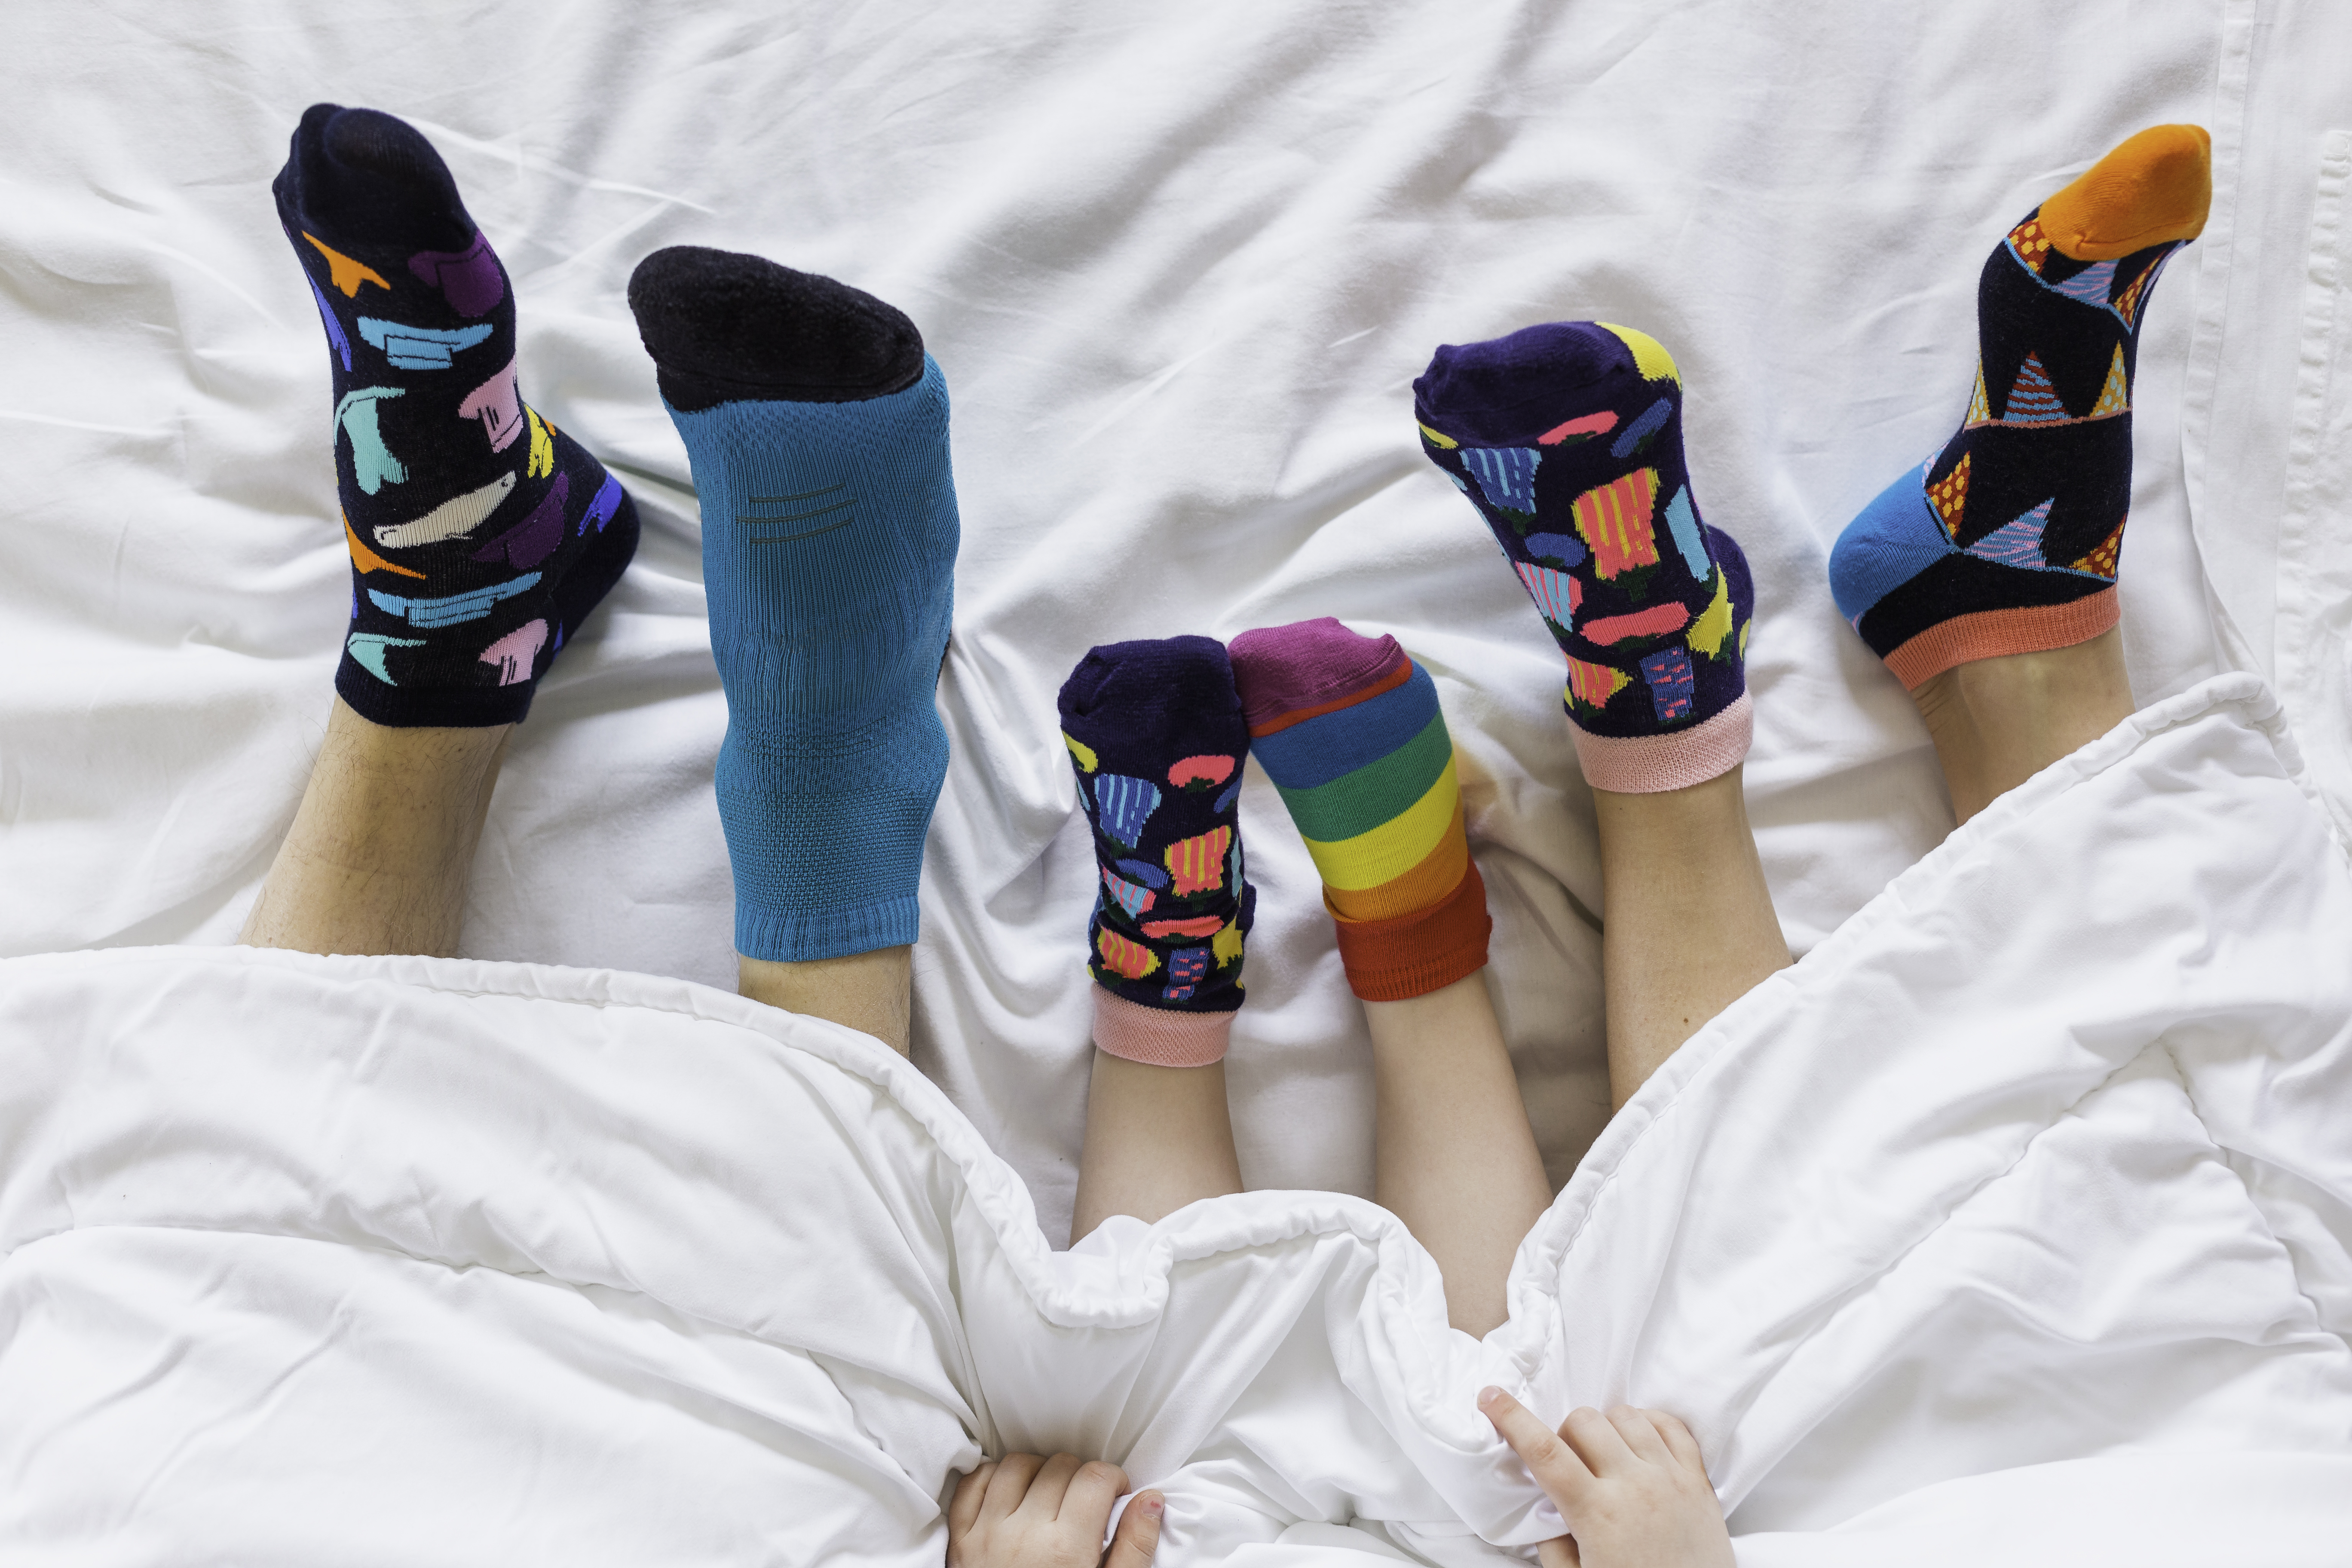 Día del Síndrome de Down. ¿Por qué se usan calcetines de colores y disparejos el 21 de marzo?